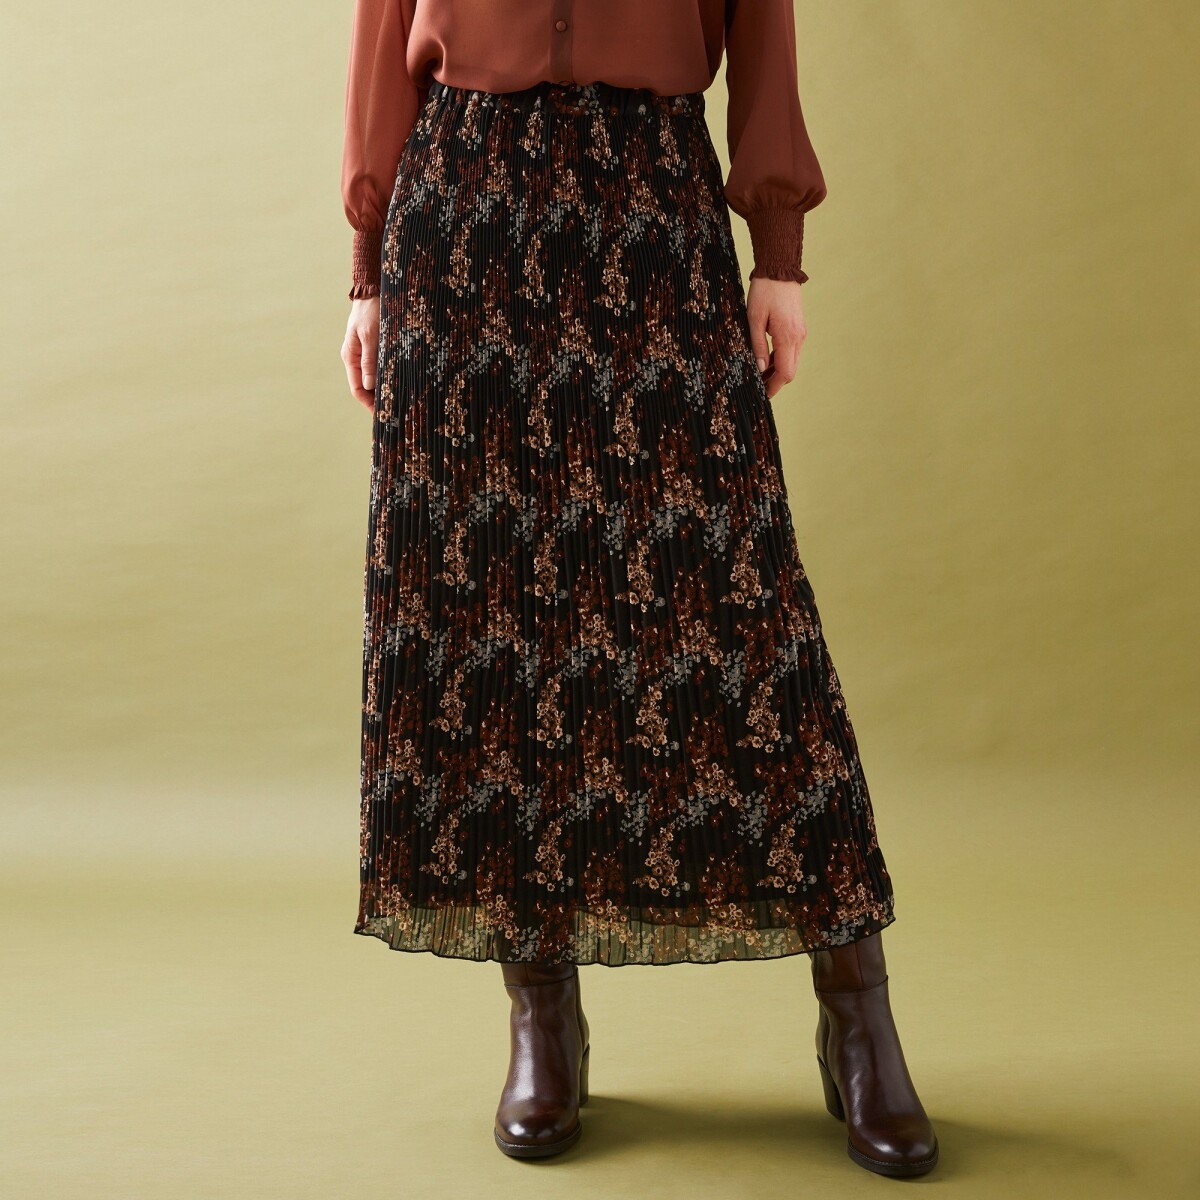 Blancheporte Plisovaná sukně s potiskem květin z recyklovaného polyesteru (1), pro malou post černákaramelová 36